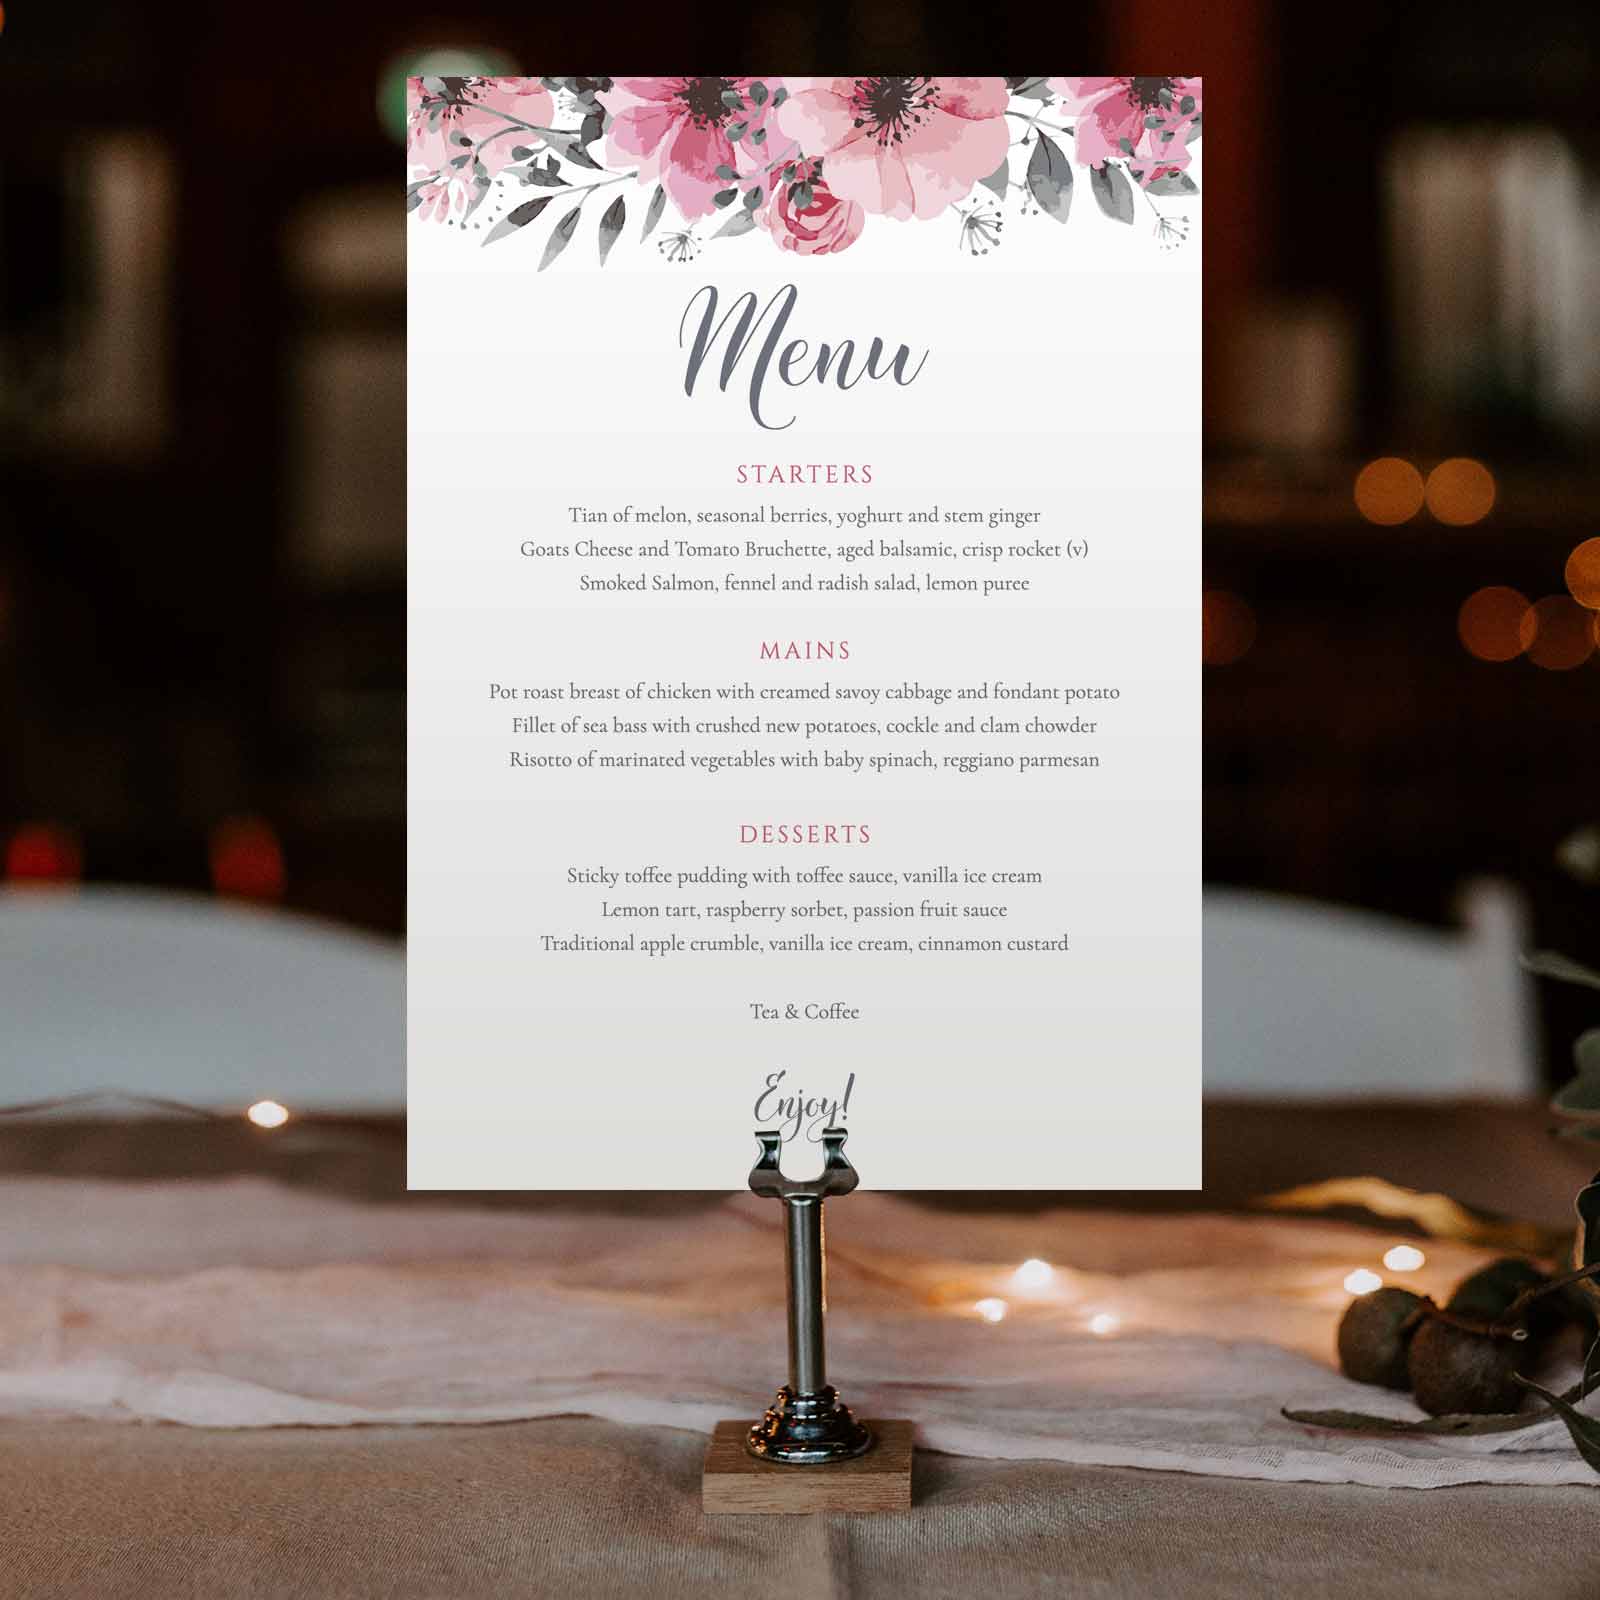 boho wedding dinner menu 3-course meal